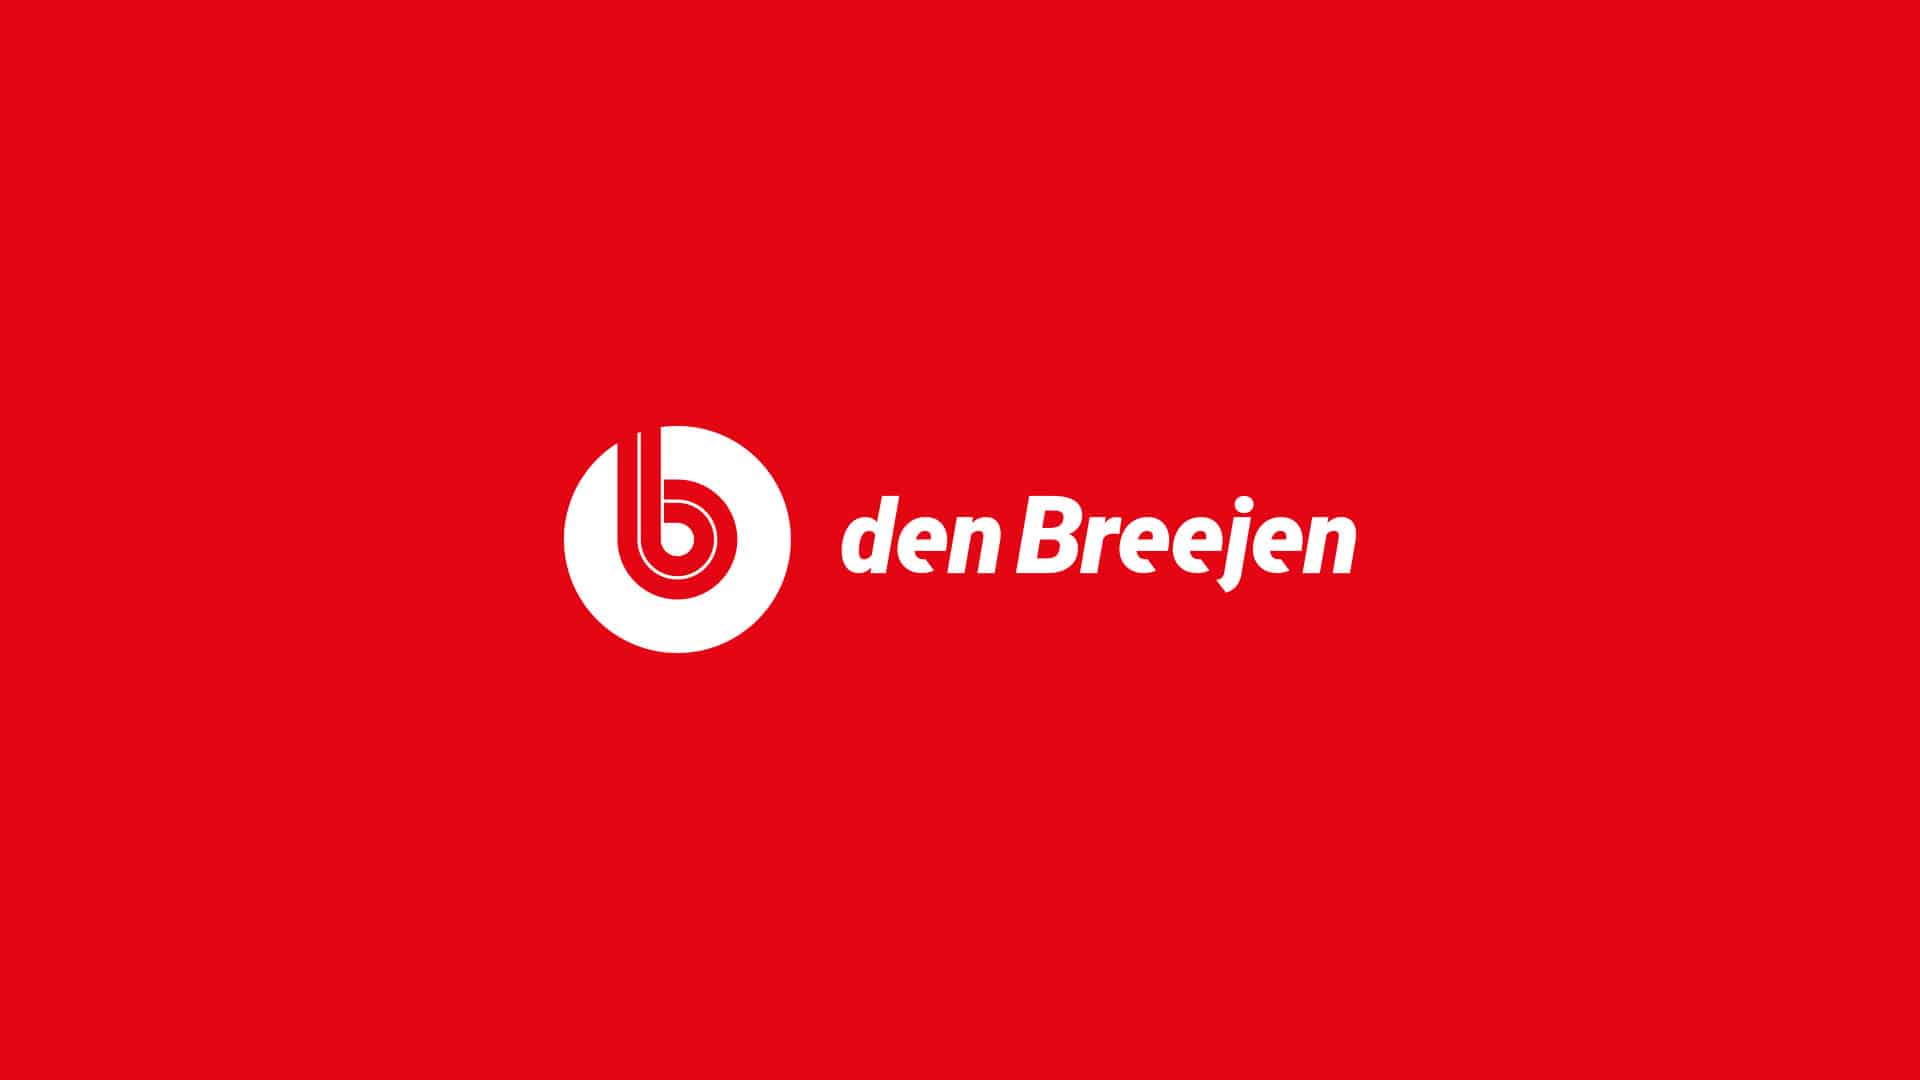 den-breejen-logo-infra